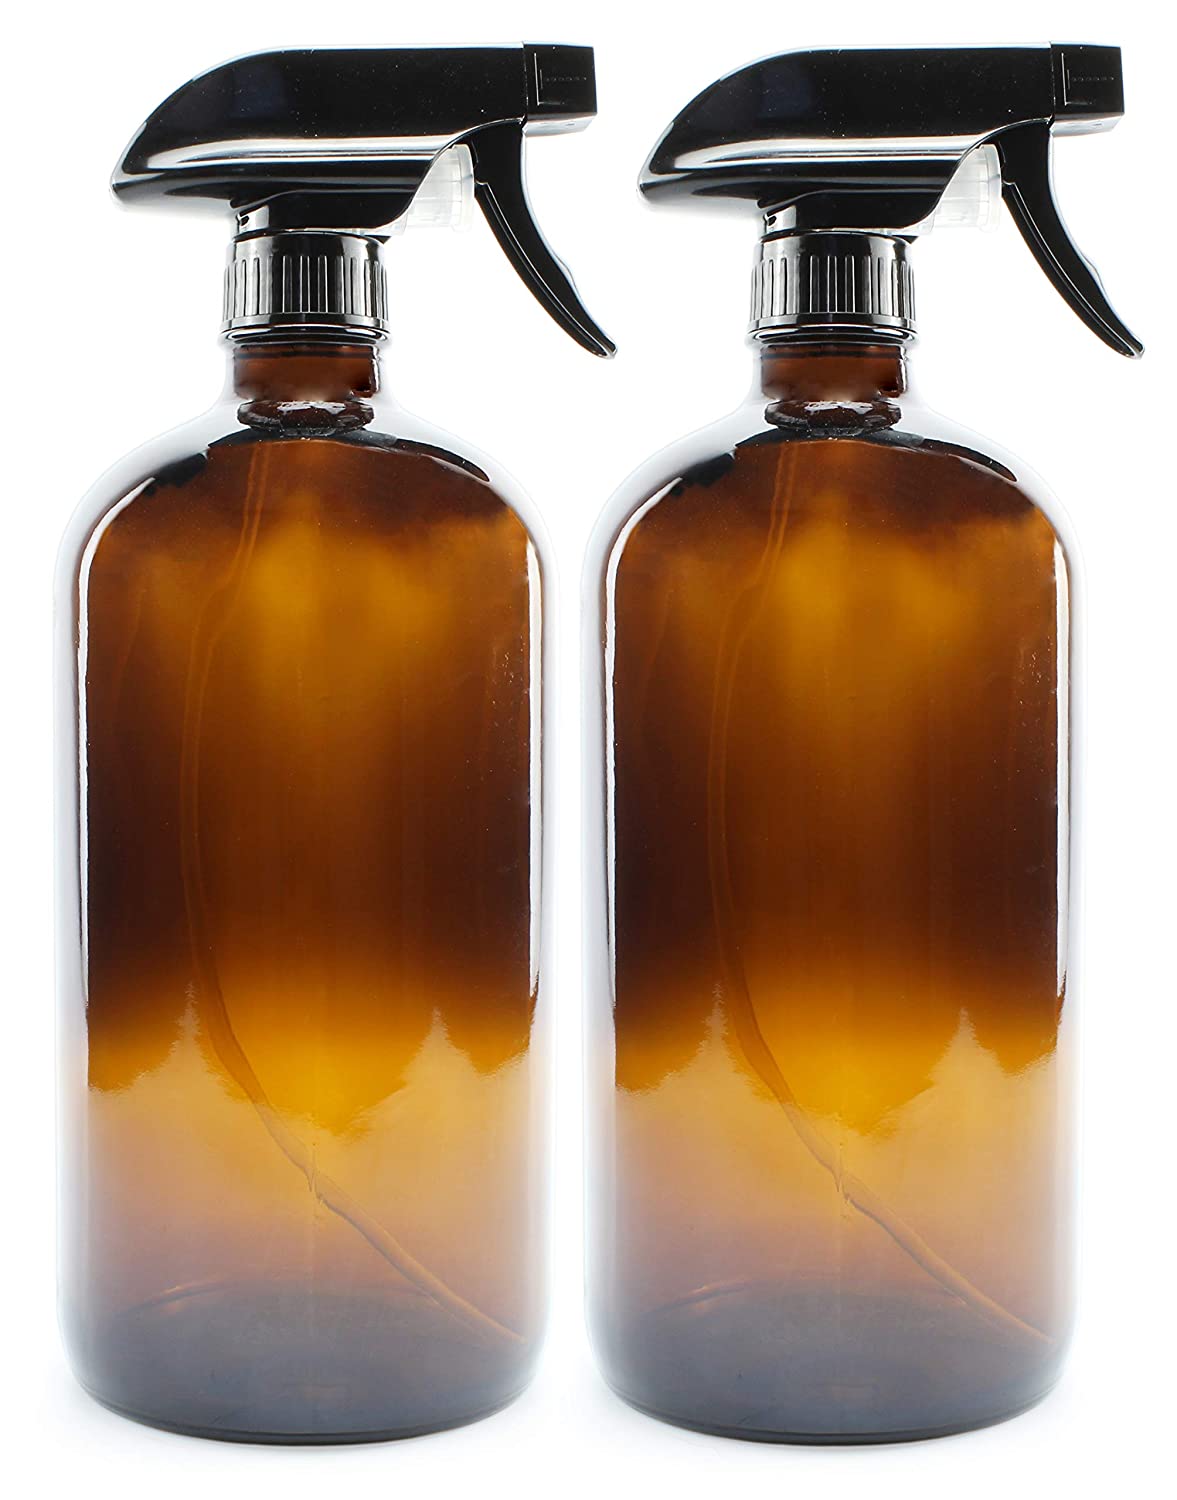 32oz Glass Spray Bottles (2-Pack)